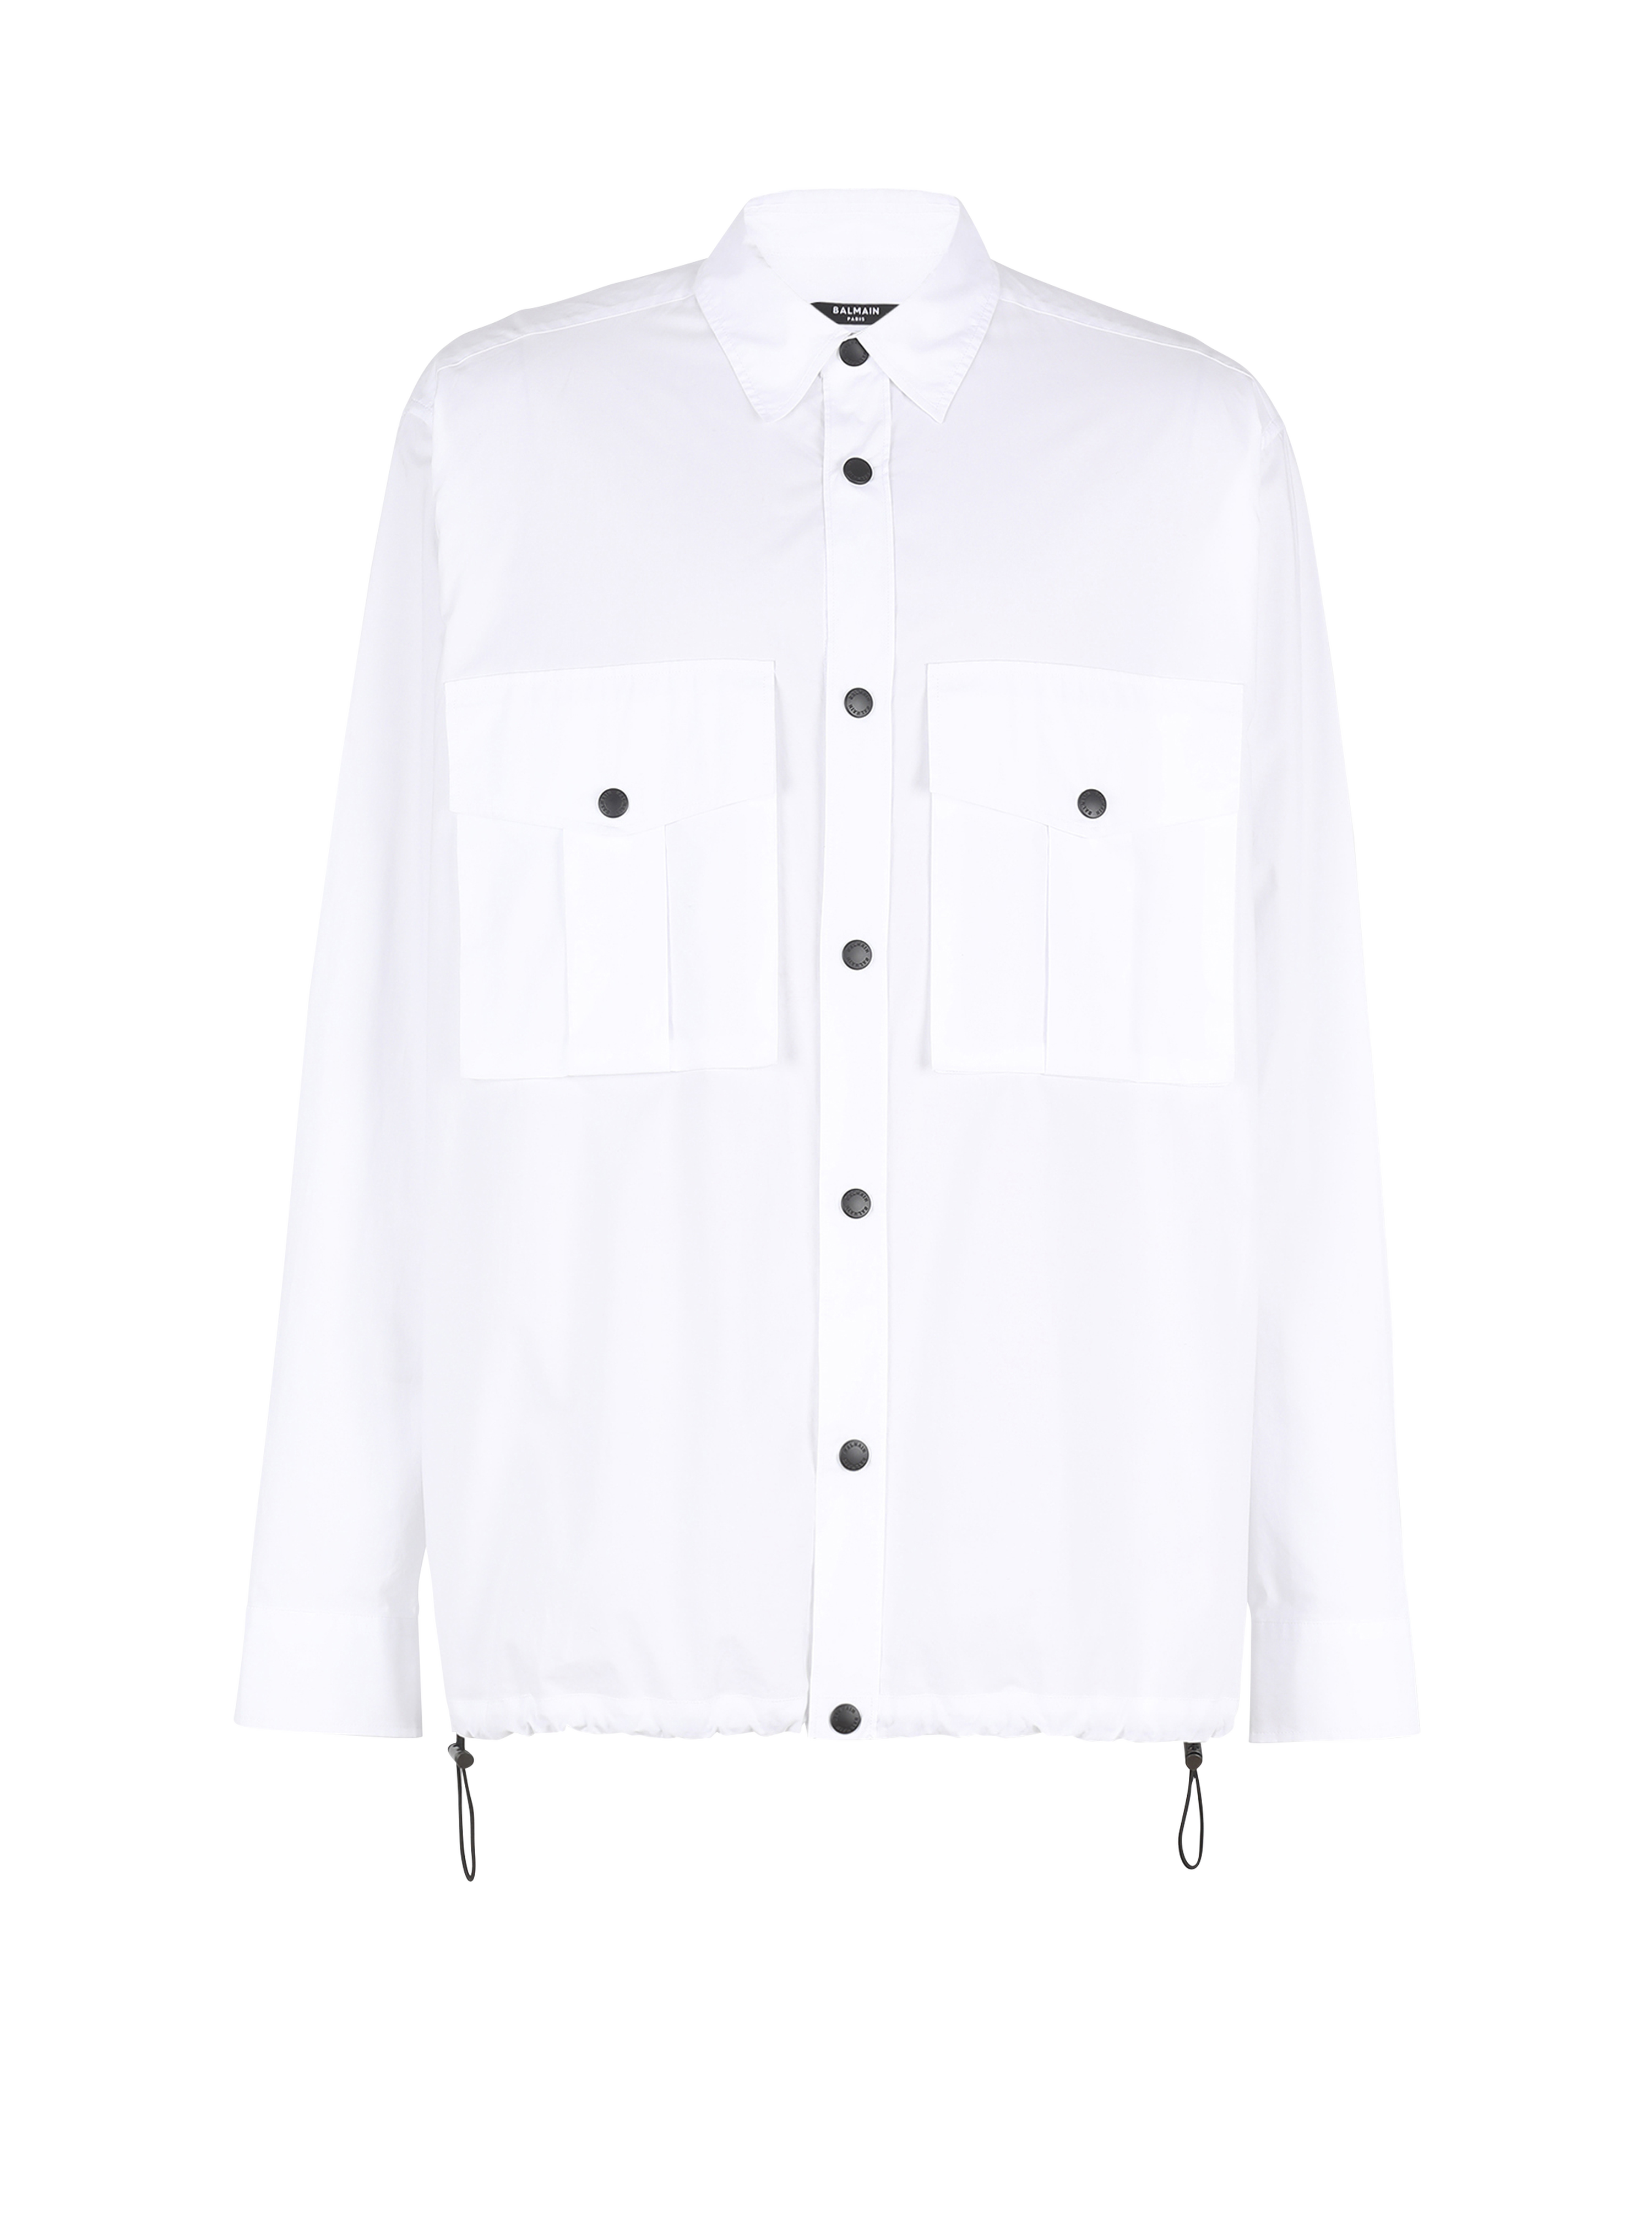 Camicia in nylon con monogramma Balmain, bianco